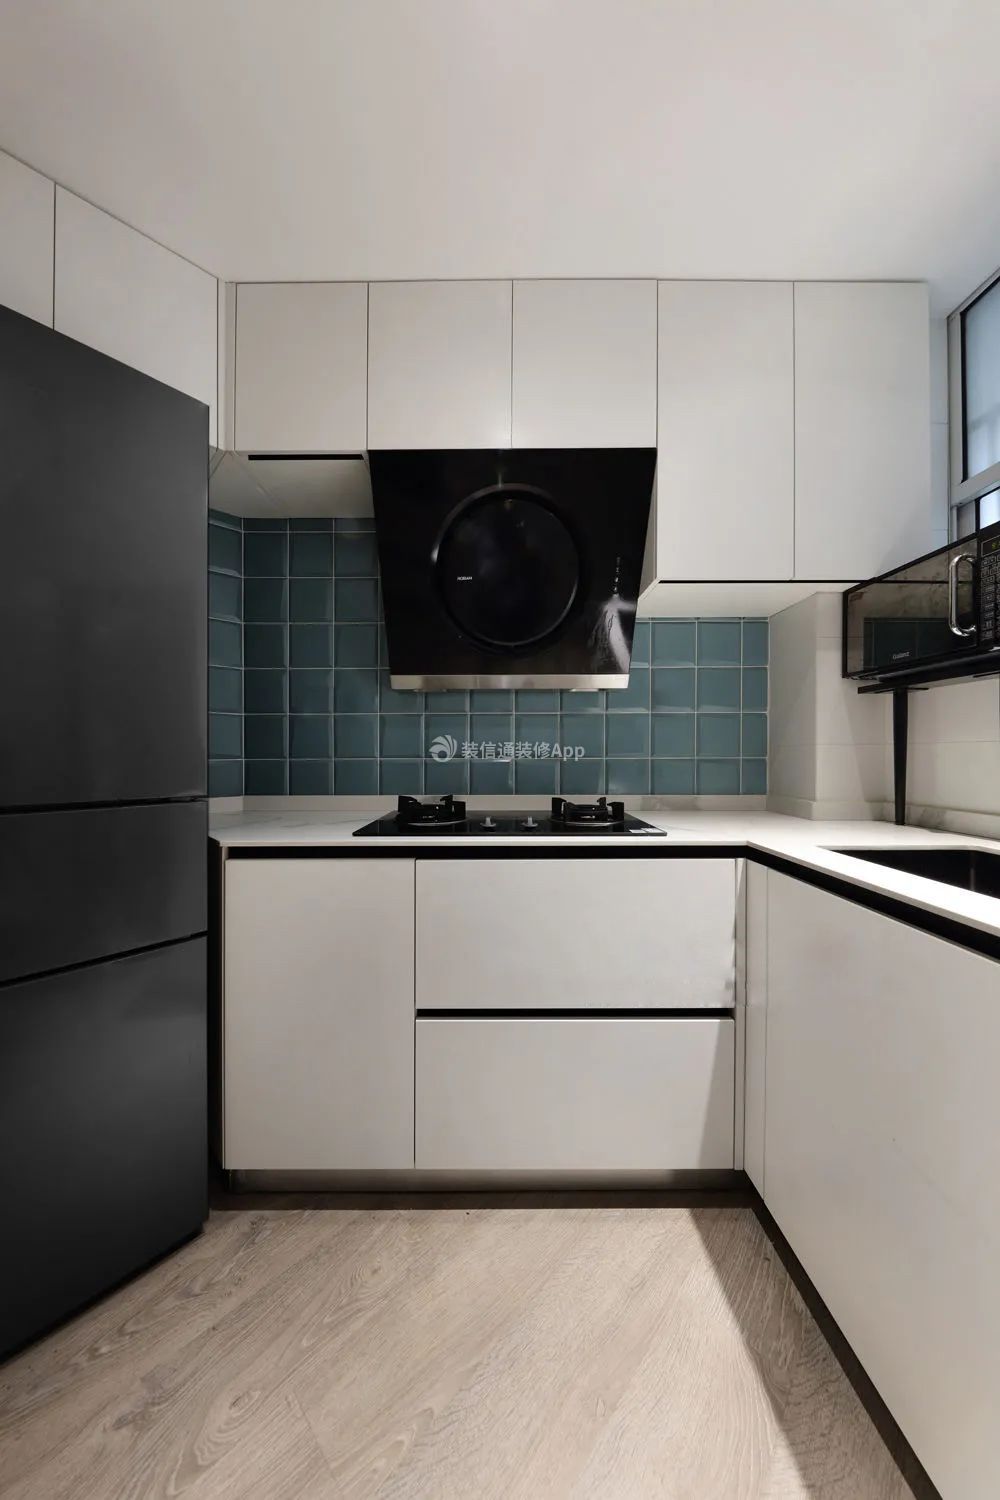 70平方米二室一厅厨房现代装修设计图